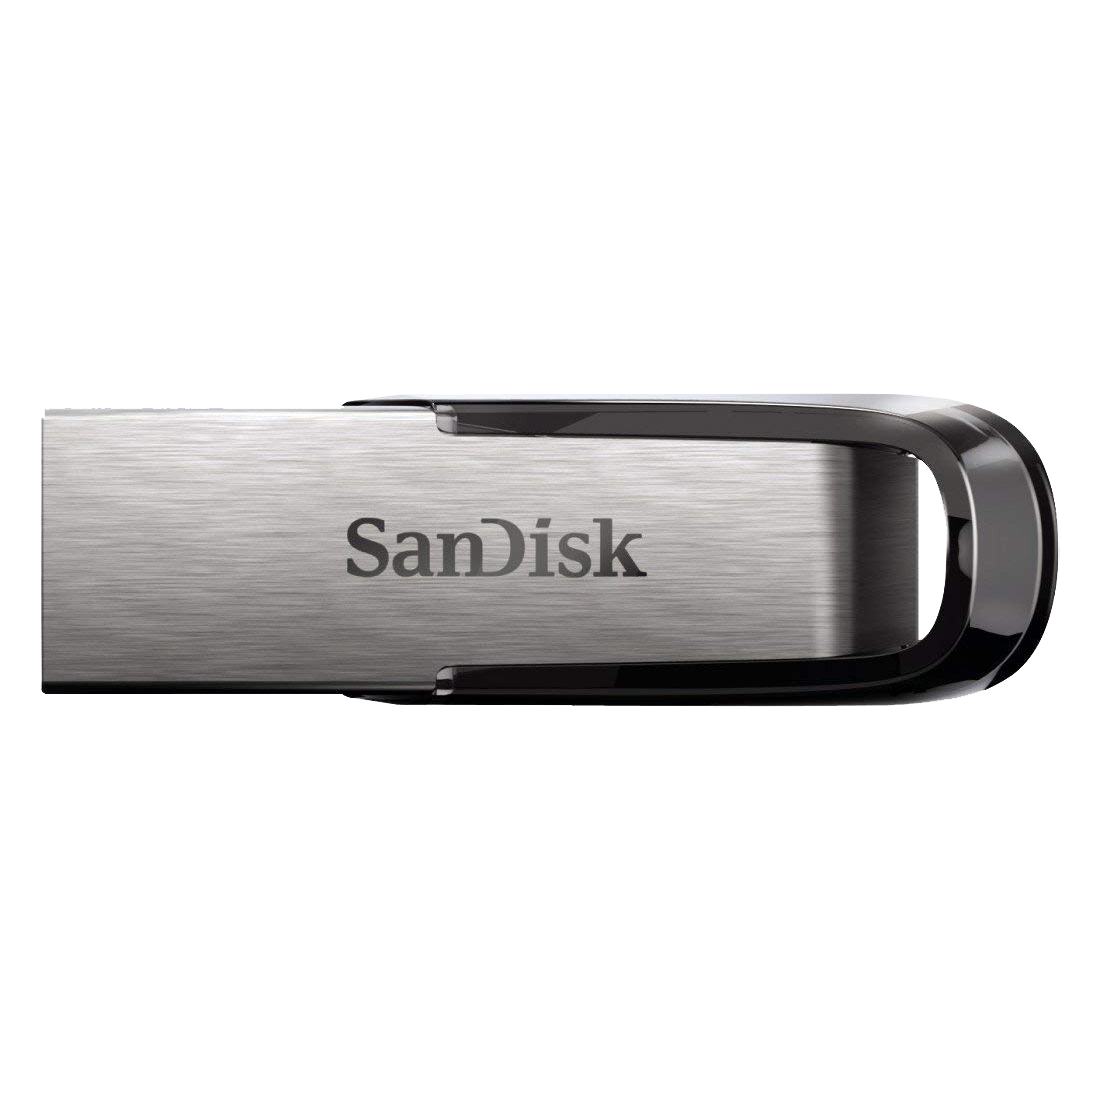 SanDisk - Sandisk Ultra Fair 64GB Pen Drive (SDCZ73-064G-I35, Silver)